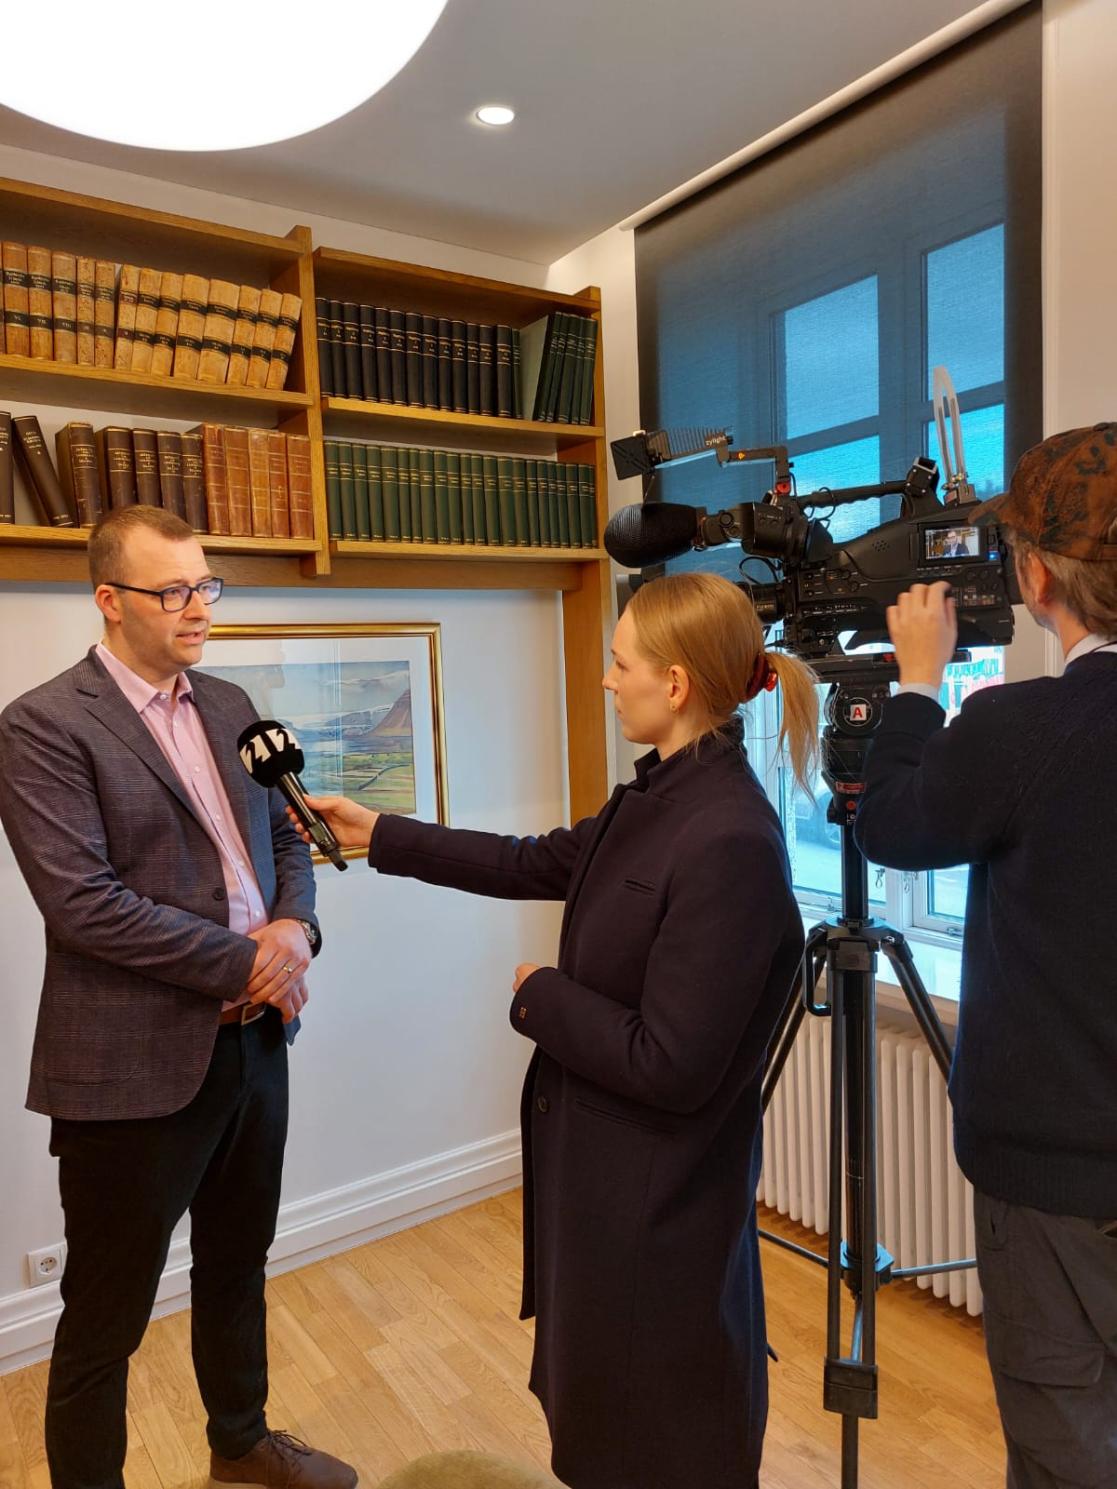 CEO of Byggðastofnun, Arnar Már Elíasson, being interviewed